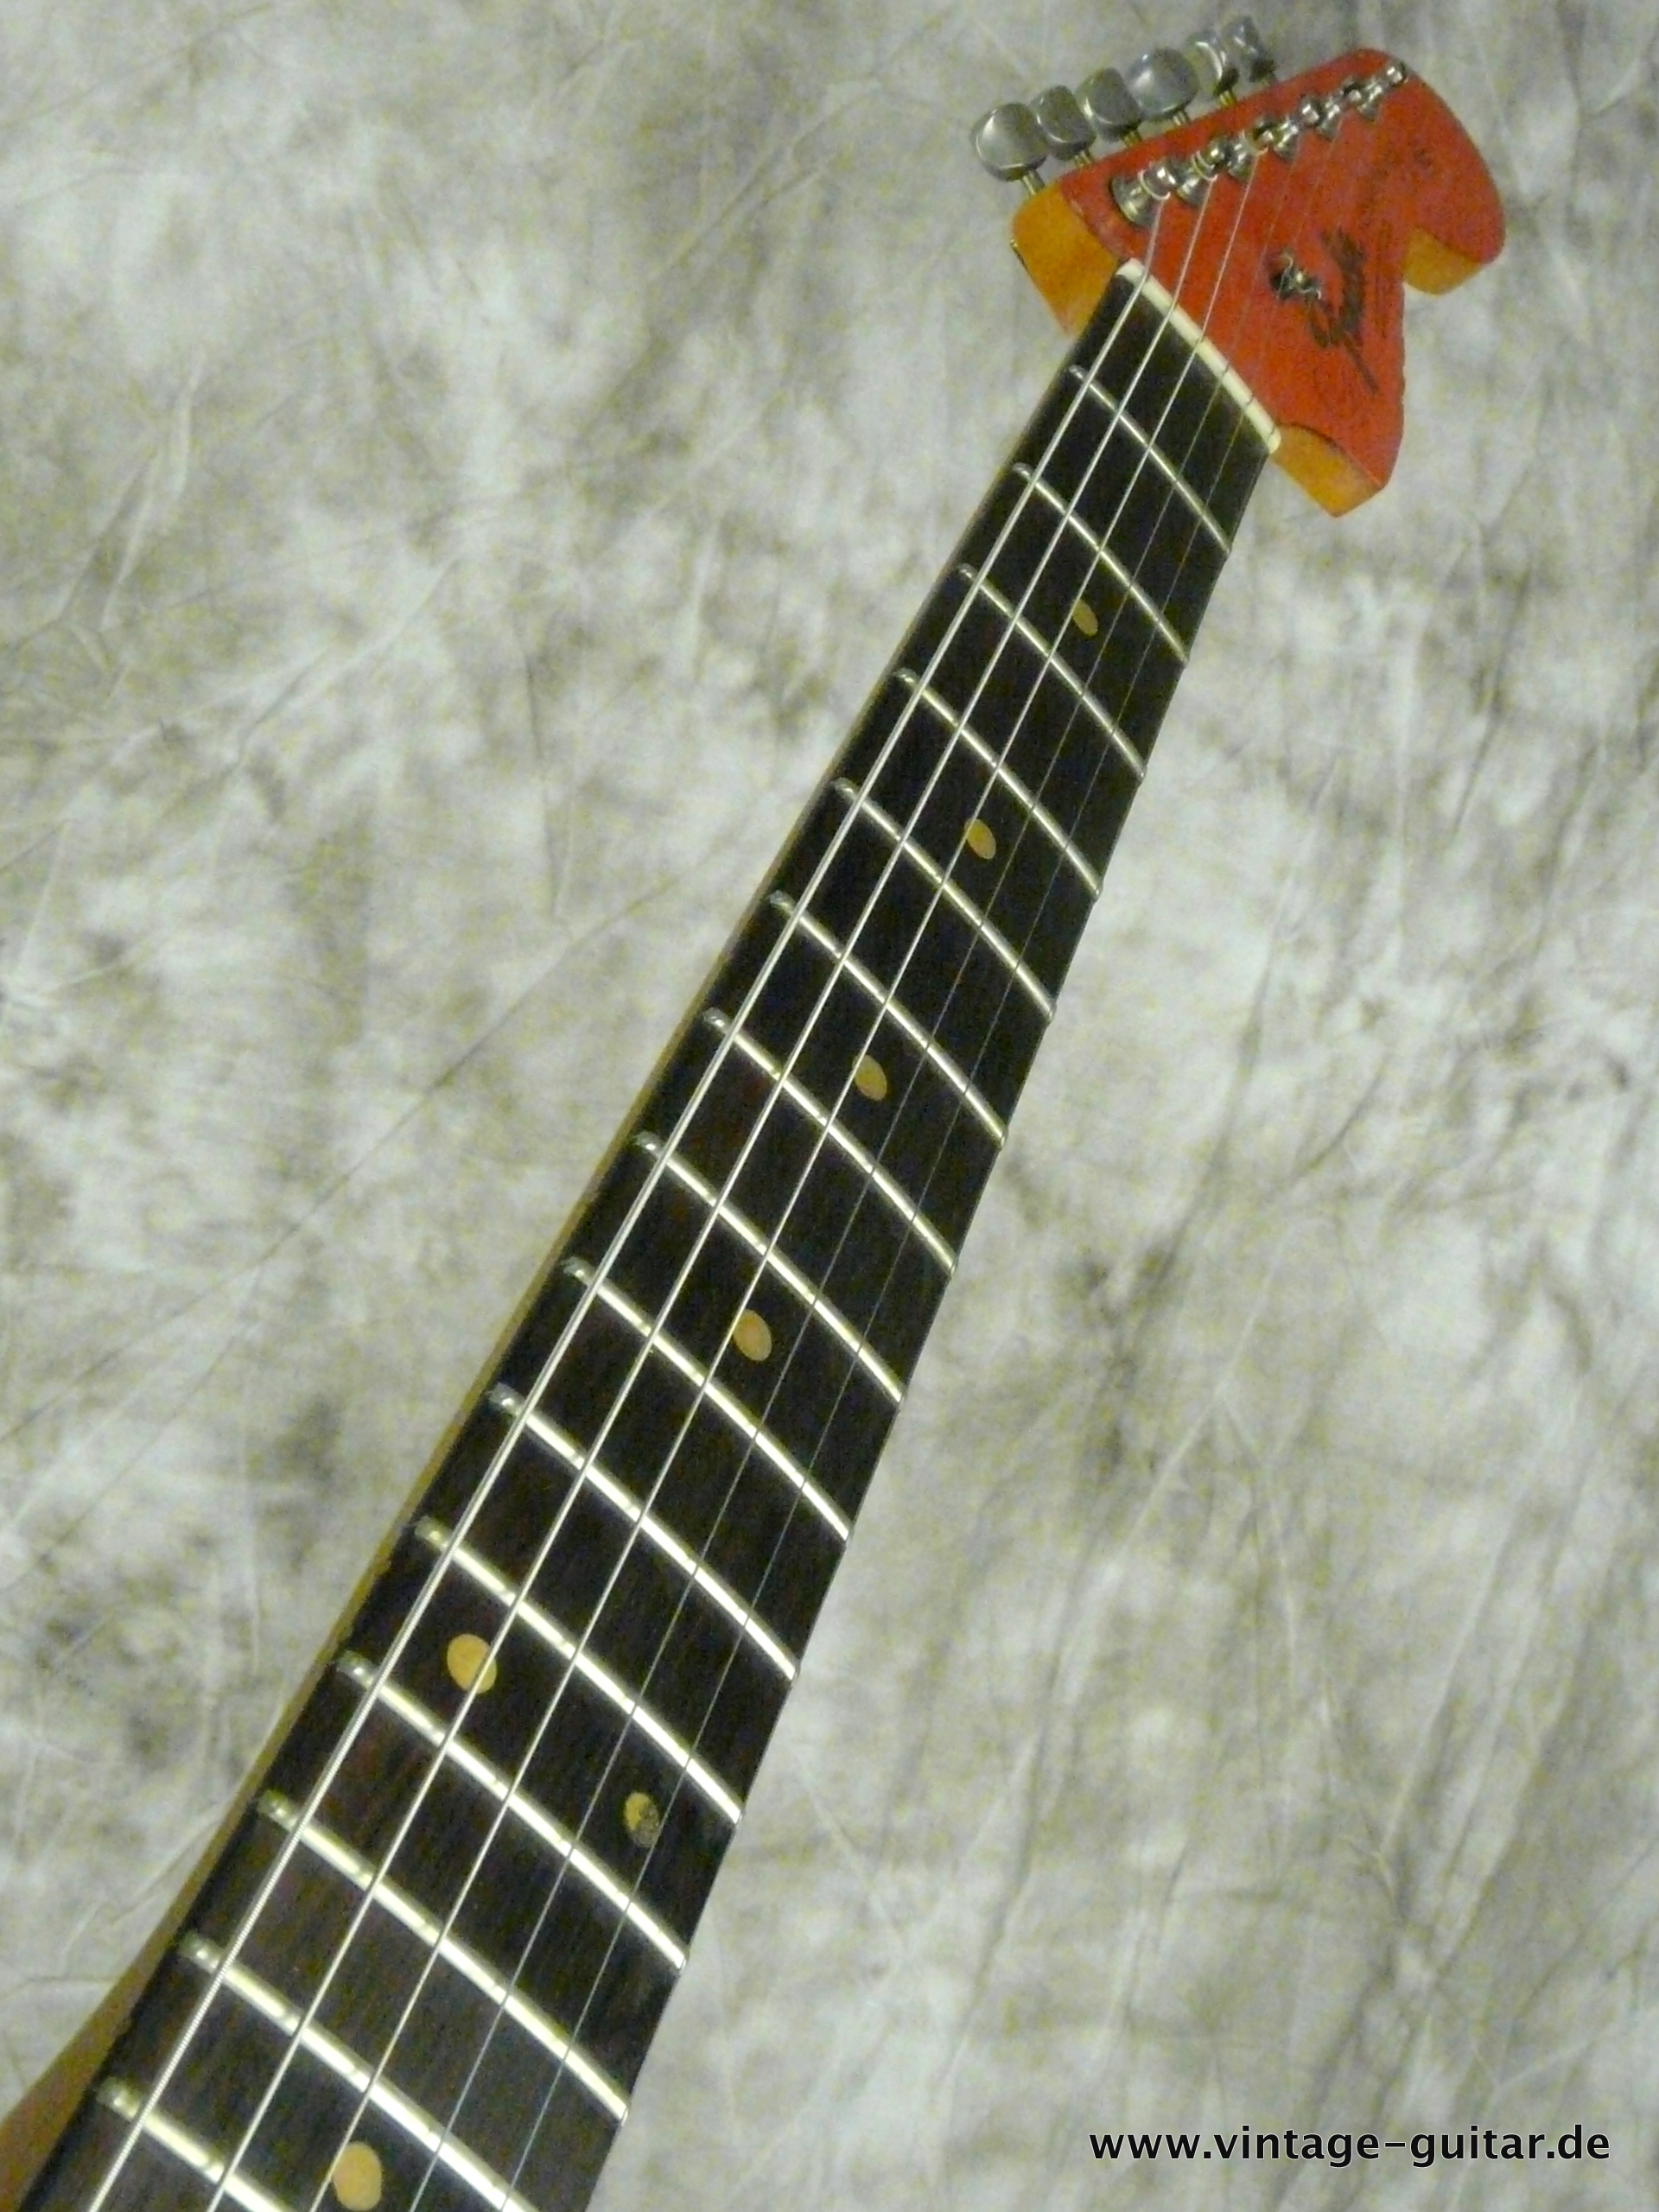 Fender-Jazzmaster-1964-refinished-fiesta-red-007.JPG